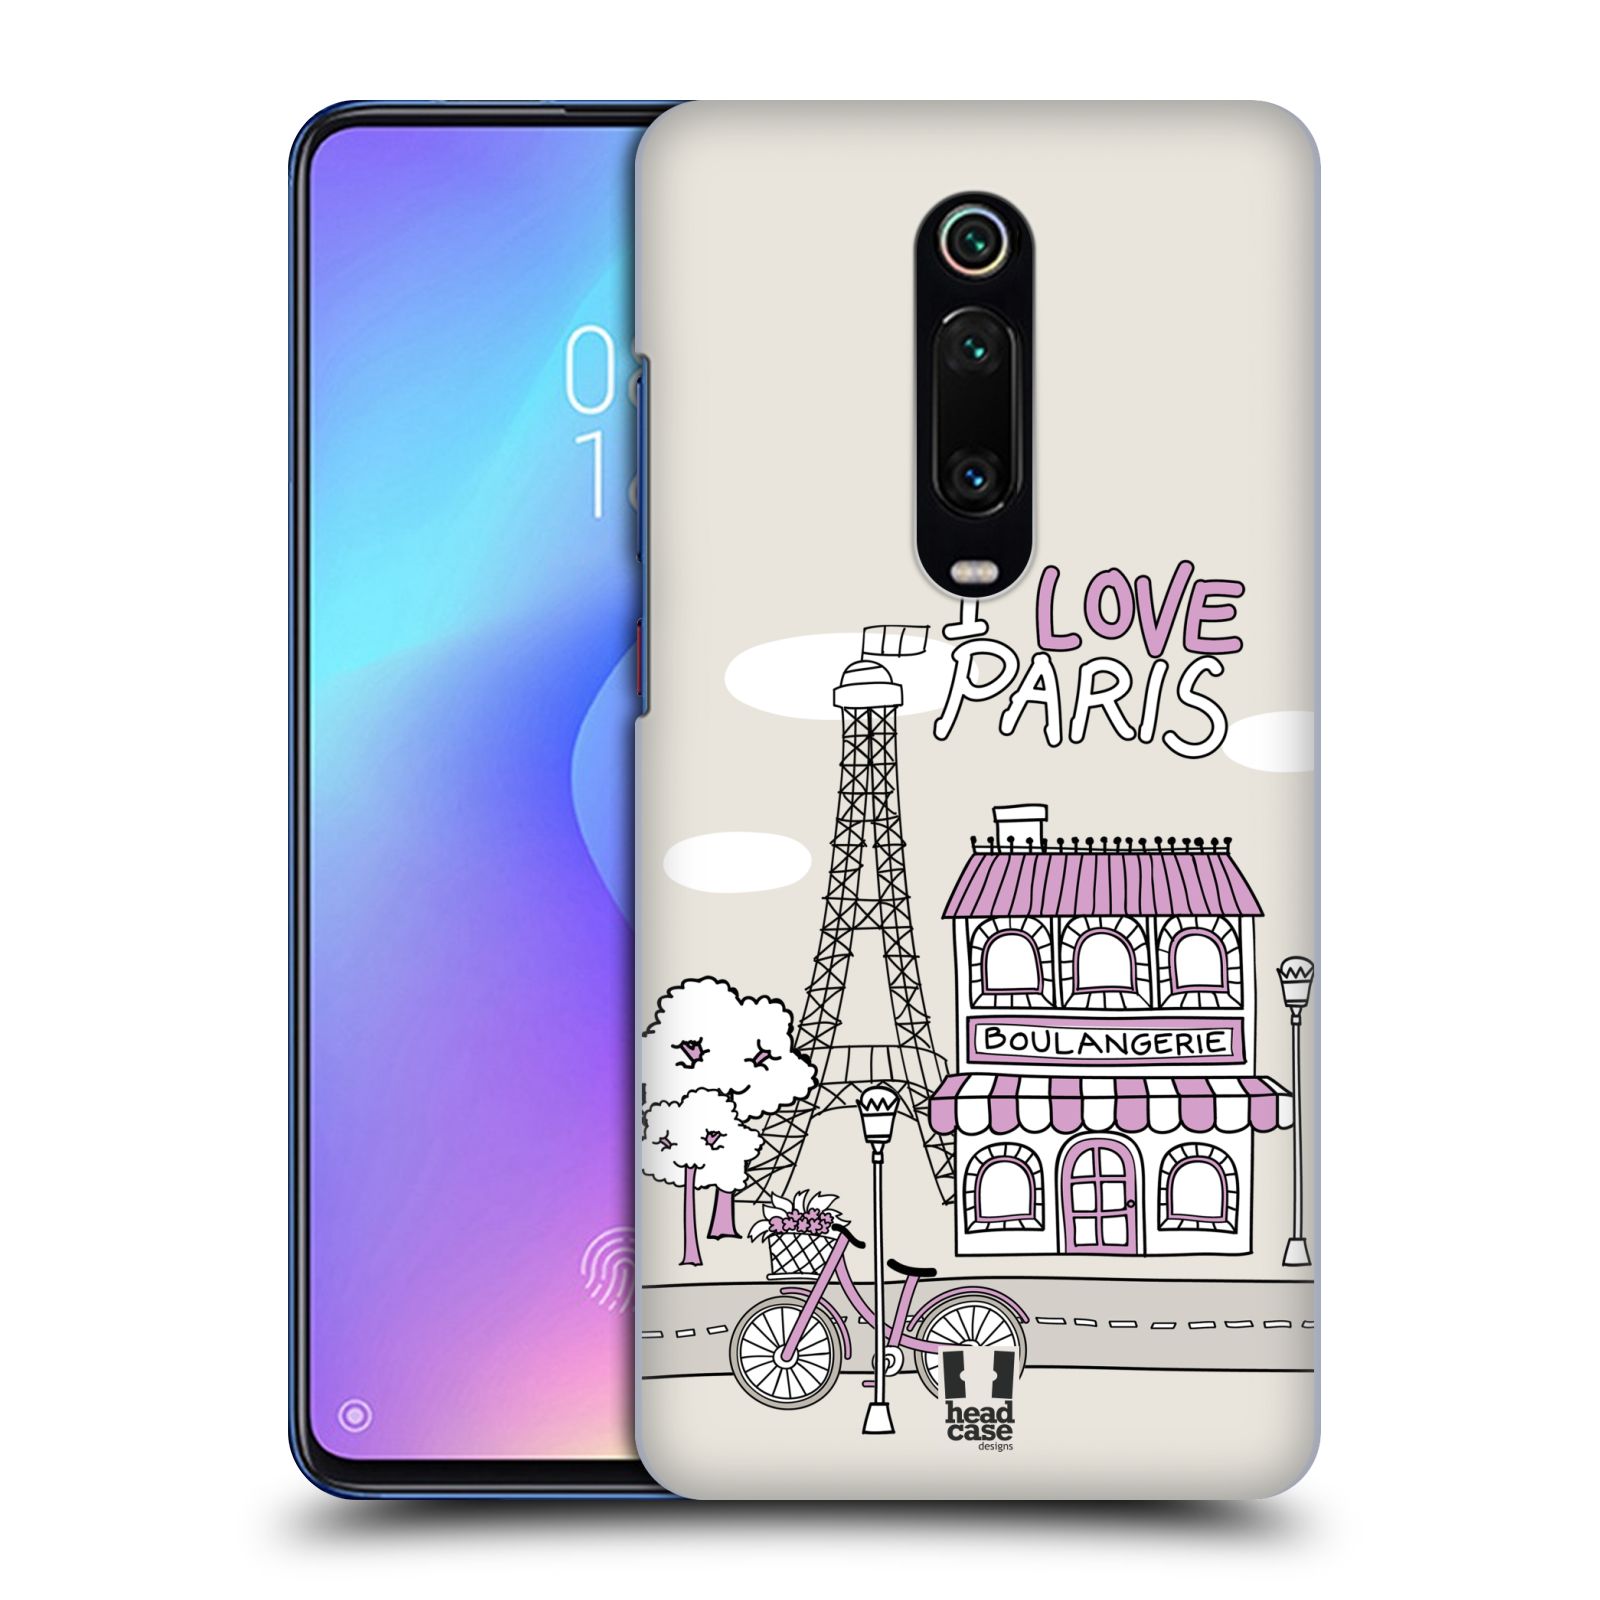 Plastový obal HEAD CASE na mobil Xiaomi Mi 9T vzor Kreslená městečka FIALOVÁ, Paříž, Francie, I LOVE PARIS